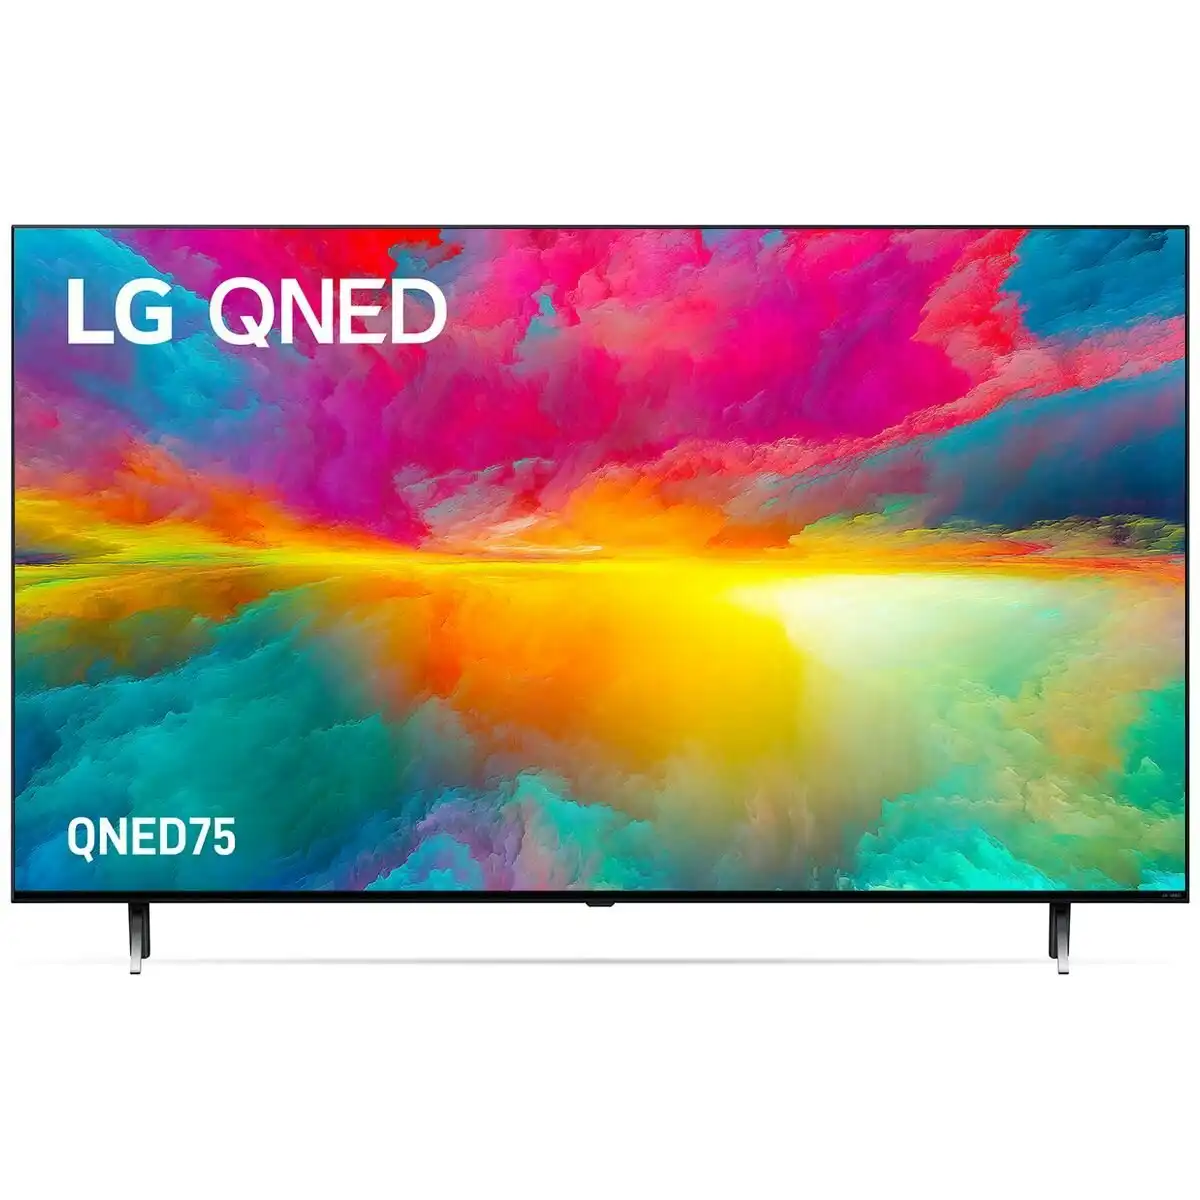 LG 65 Inch QNED75 4K UHD Smart LED TV